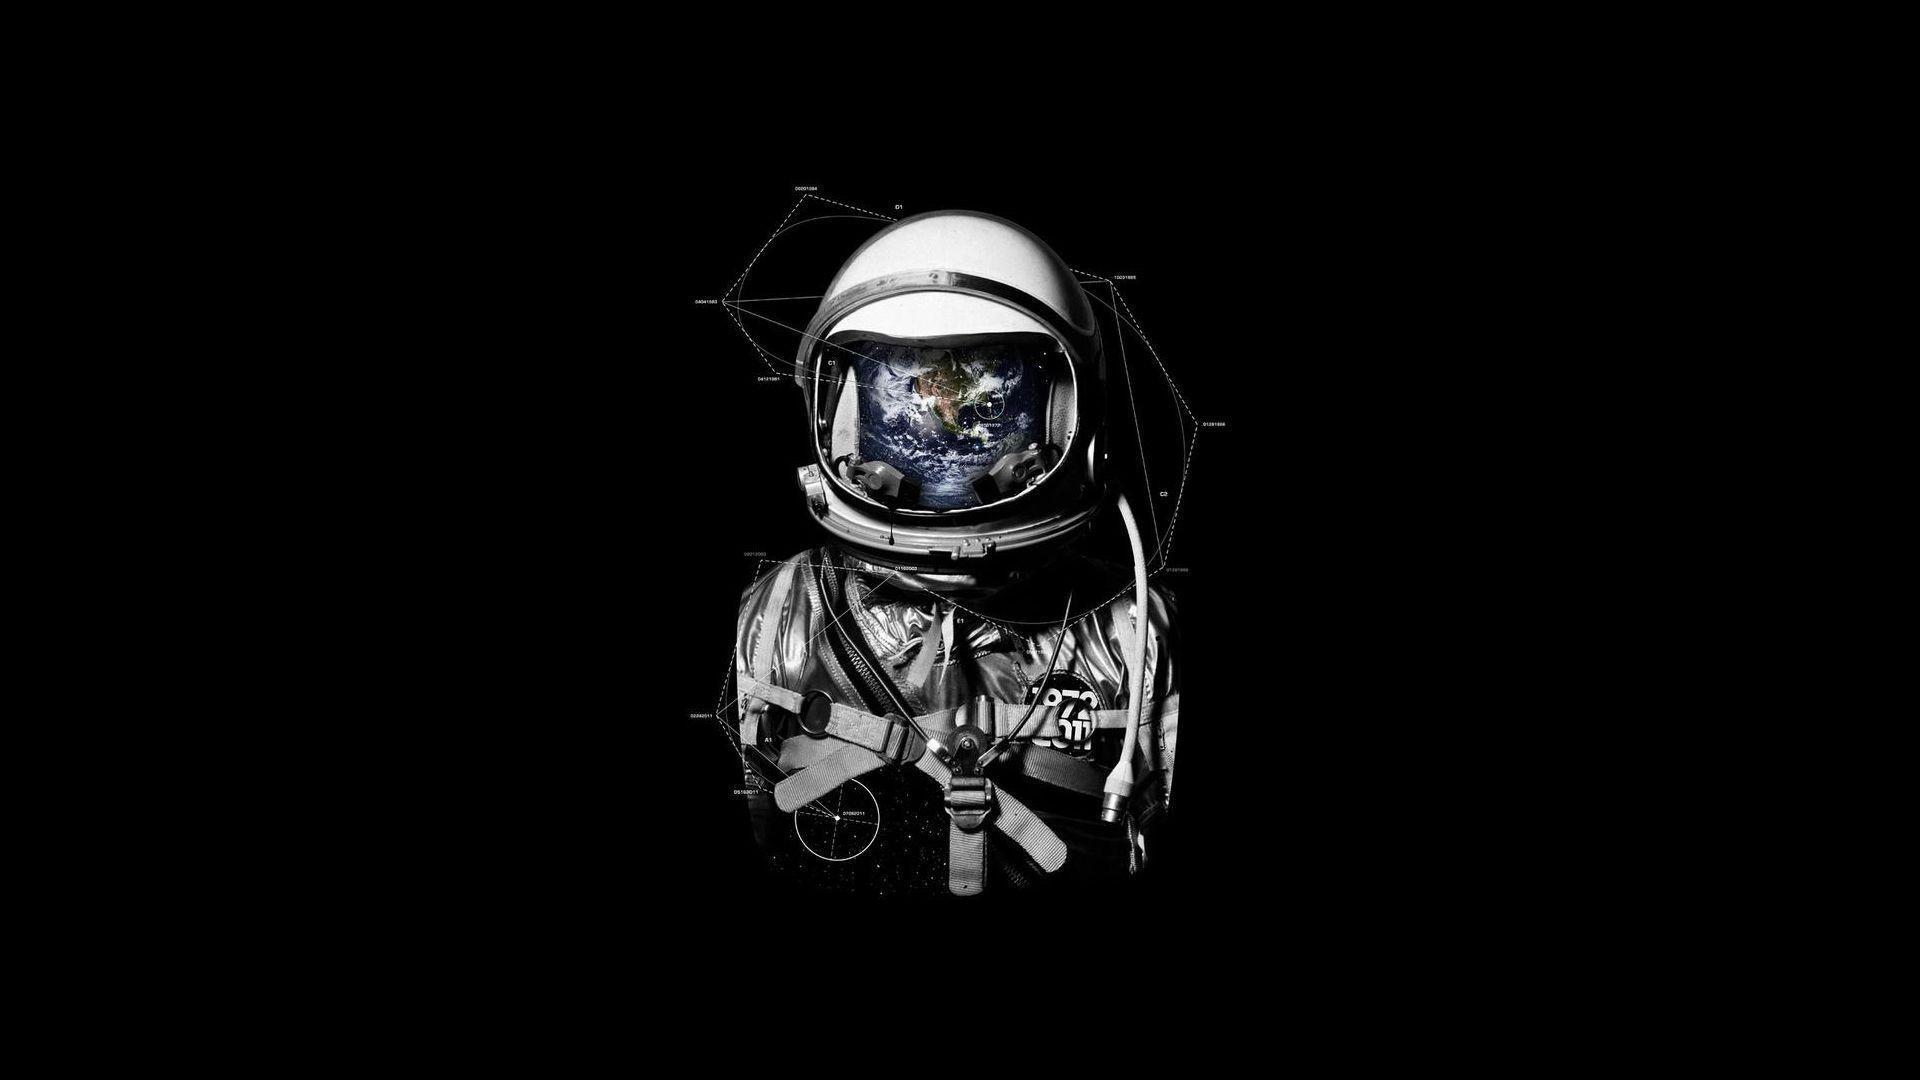 Dark Astronaut Wallpapers - Top Free Dark Astronaut Backgrounds